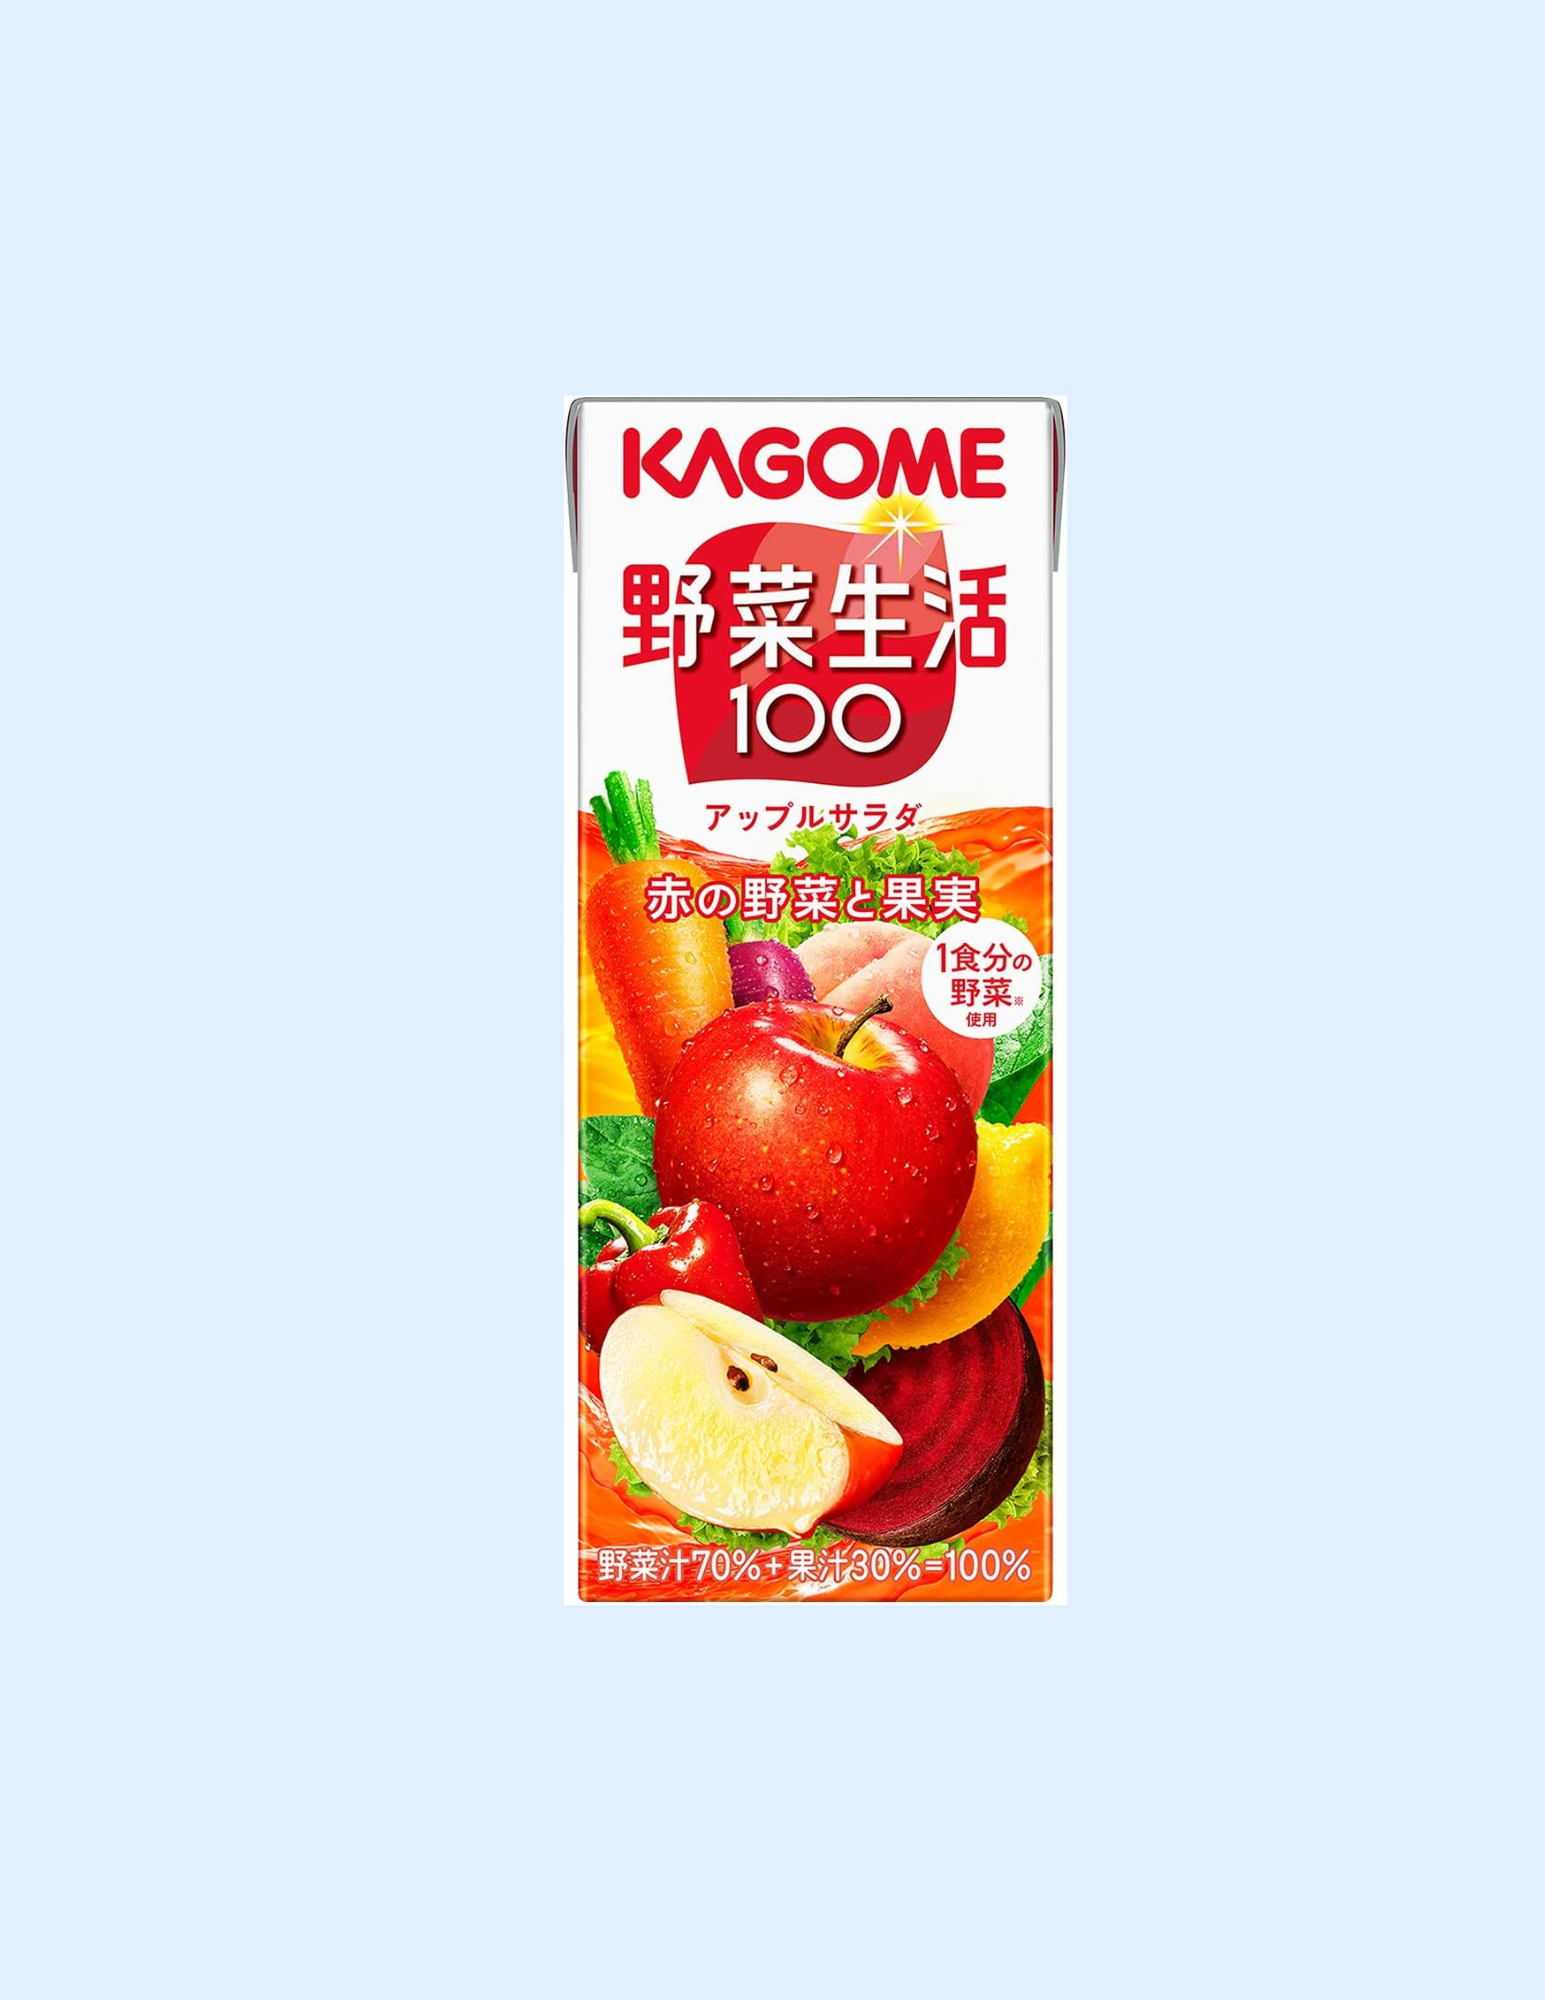 Kagome Vegetable Life 100 Apple Salad Juice